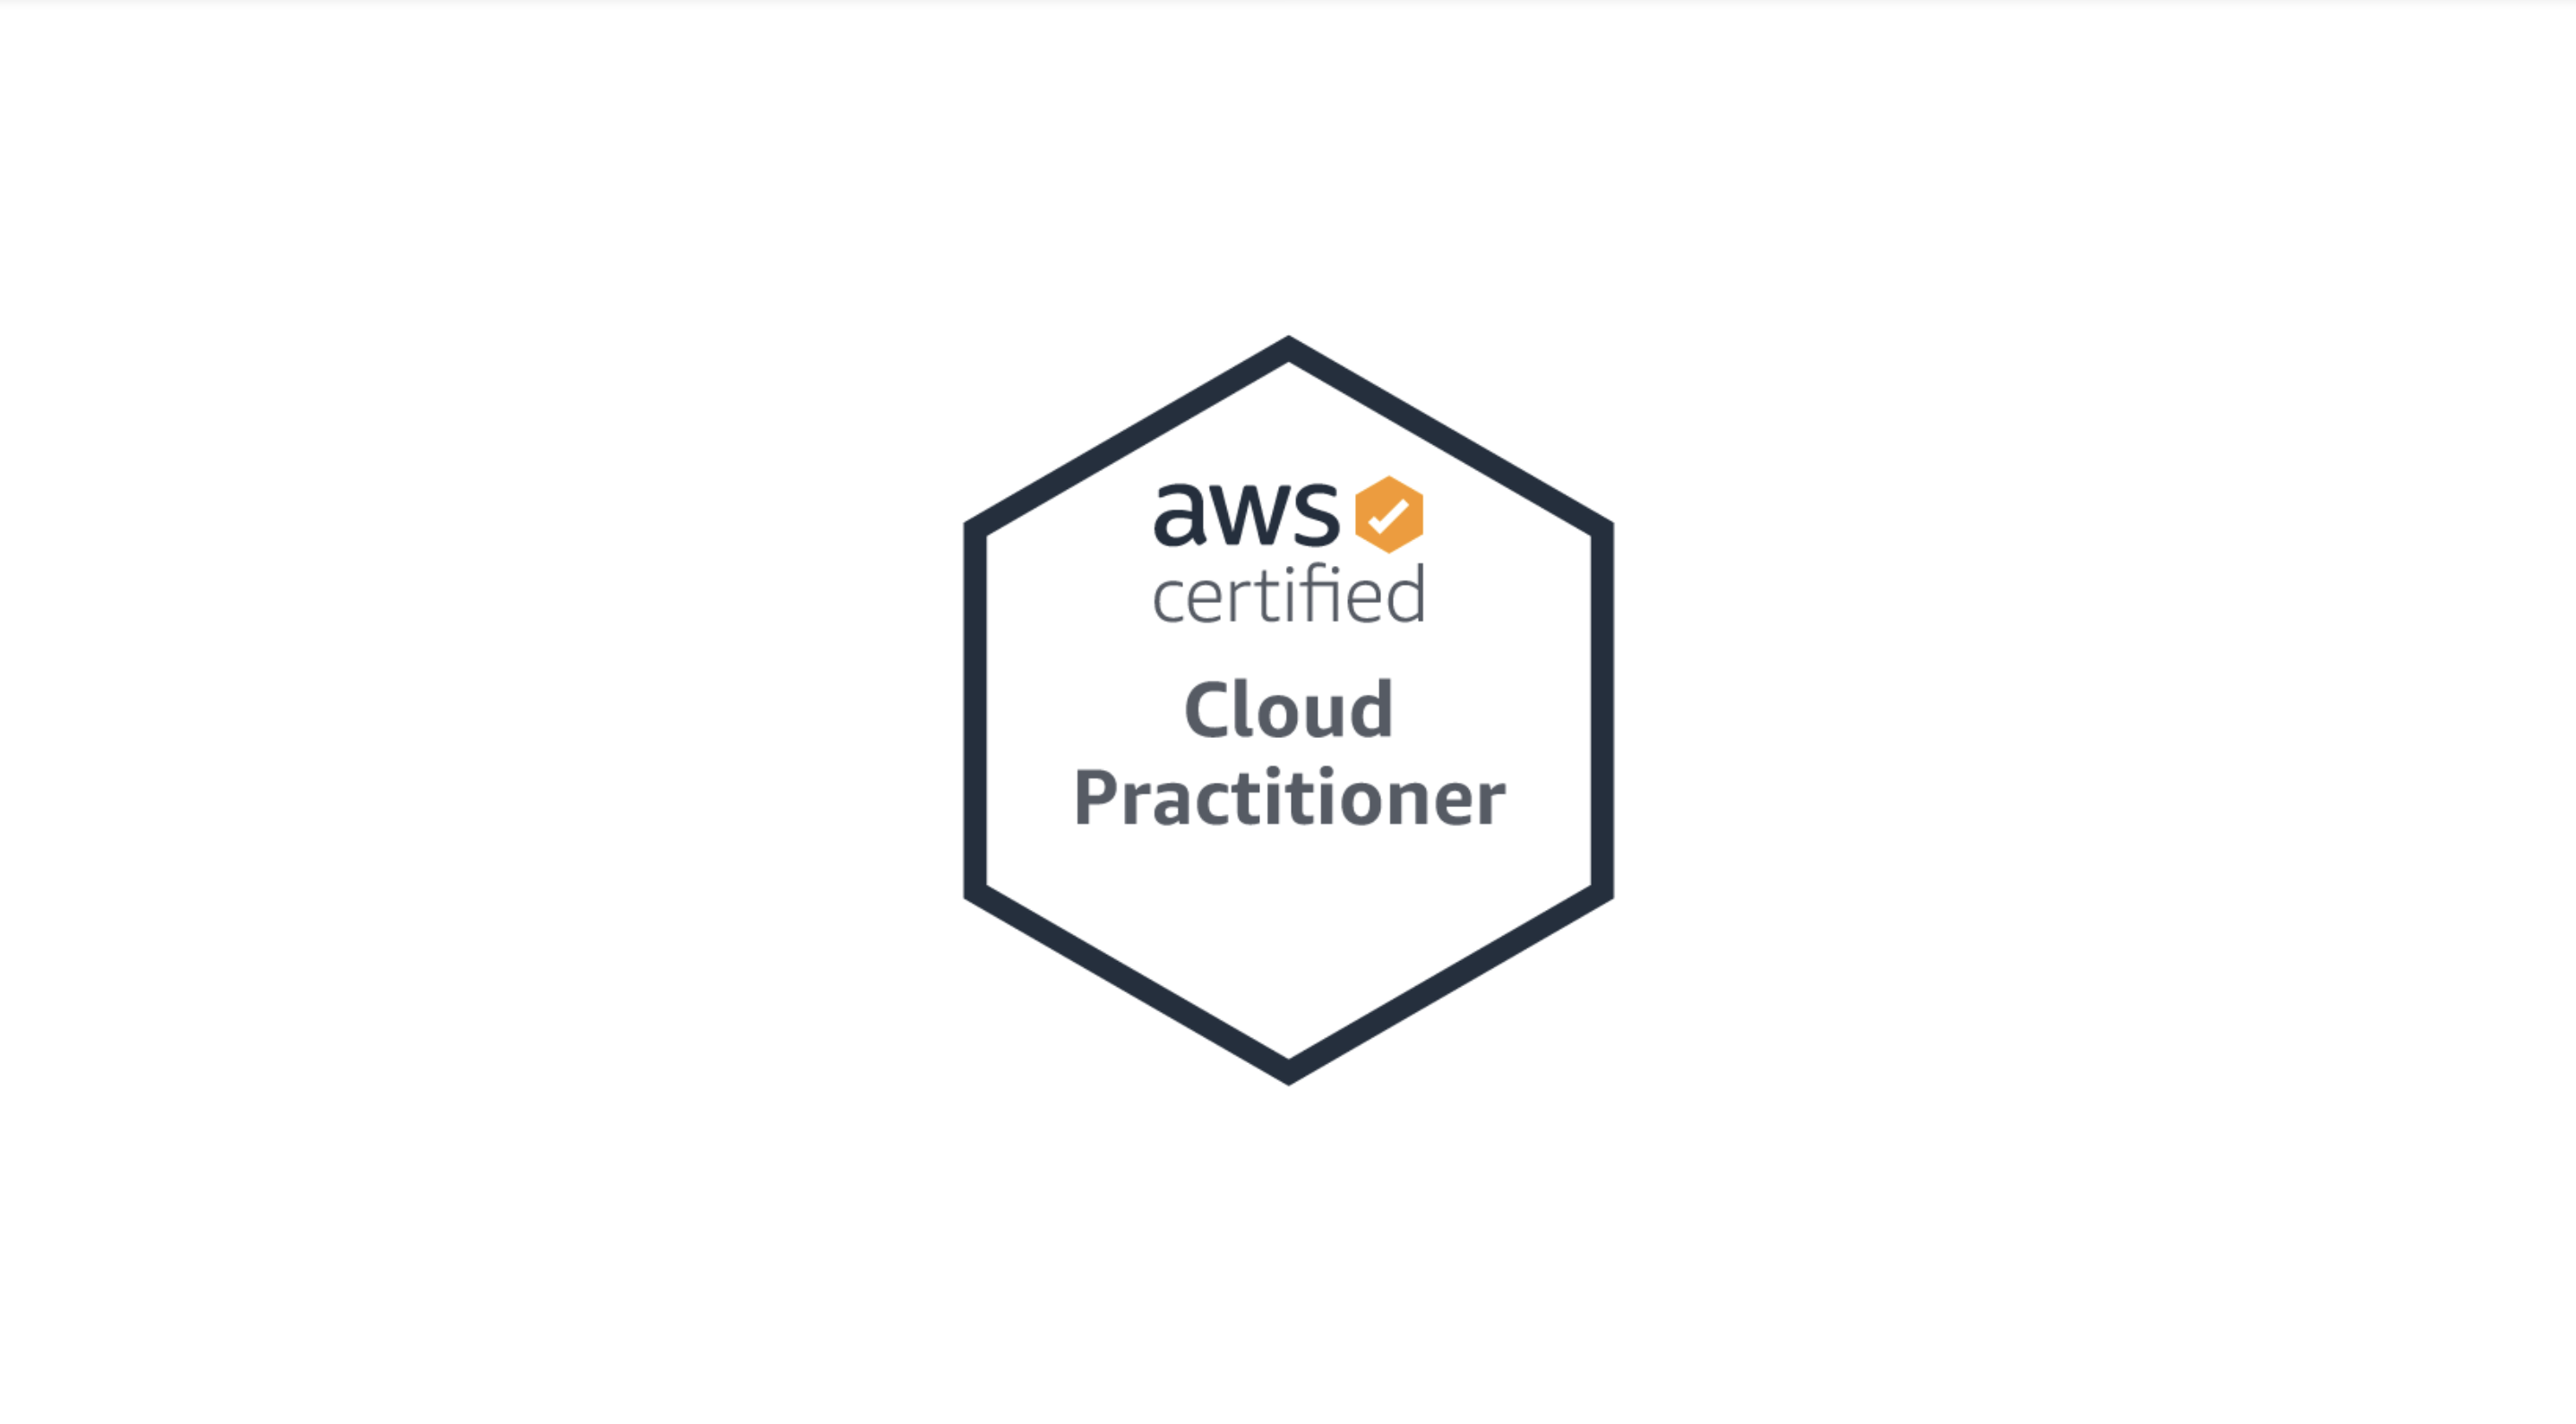 AWS certified Cloud Practitioner (e non solo): come si ottengono le certificazioni AWS?